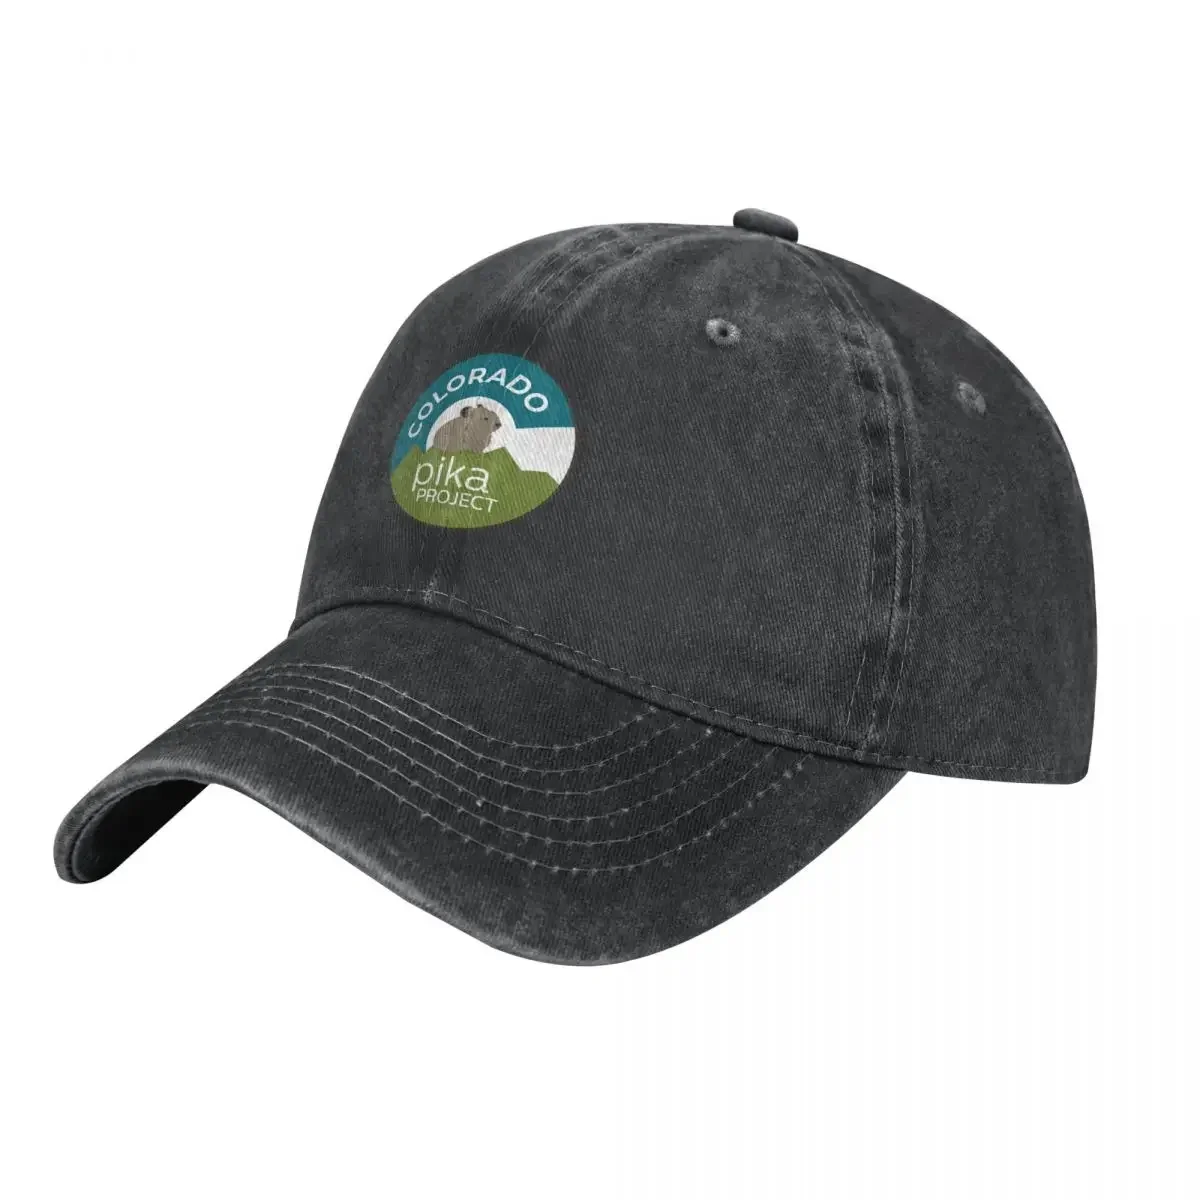 Colorado Pika Project Cowboy Hat tea Hat Sun Hat For Children Bobble Women's Beach Visor Men's